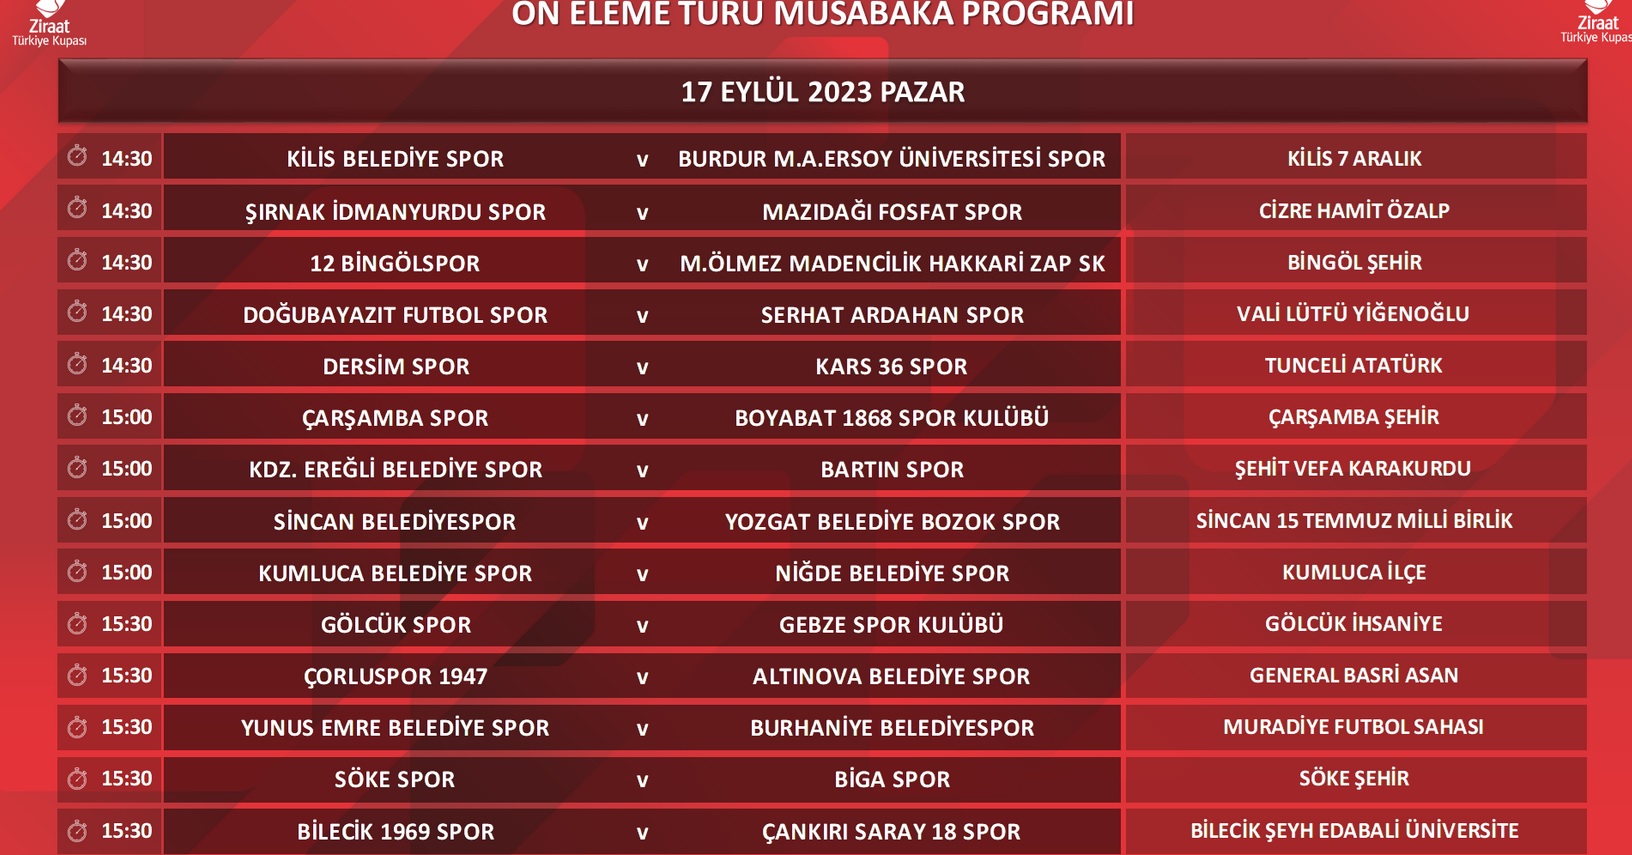 Ziraat Türkiye Kupası 2023/2024 Sezonu